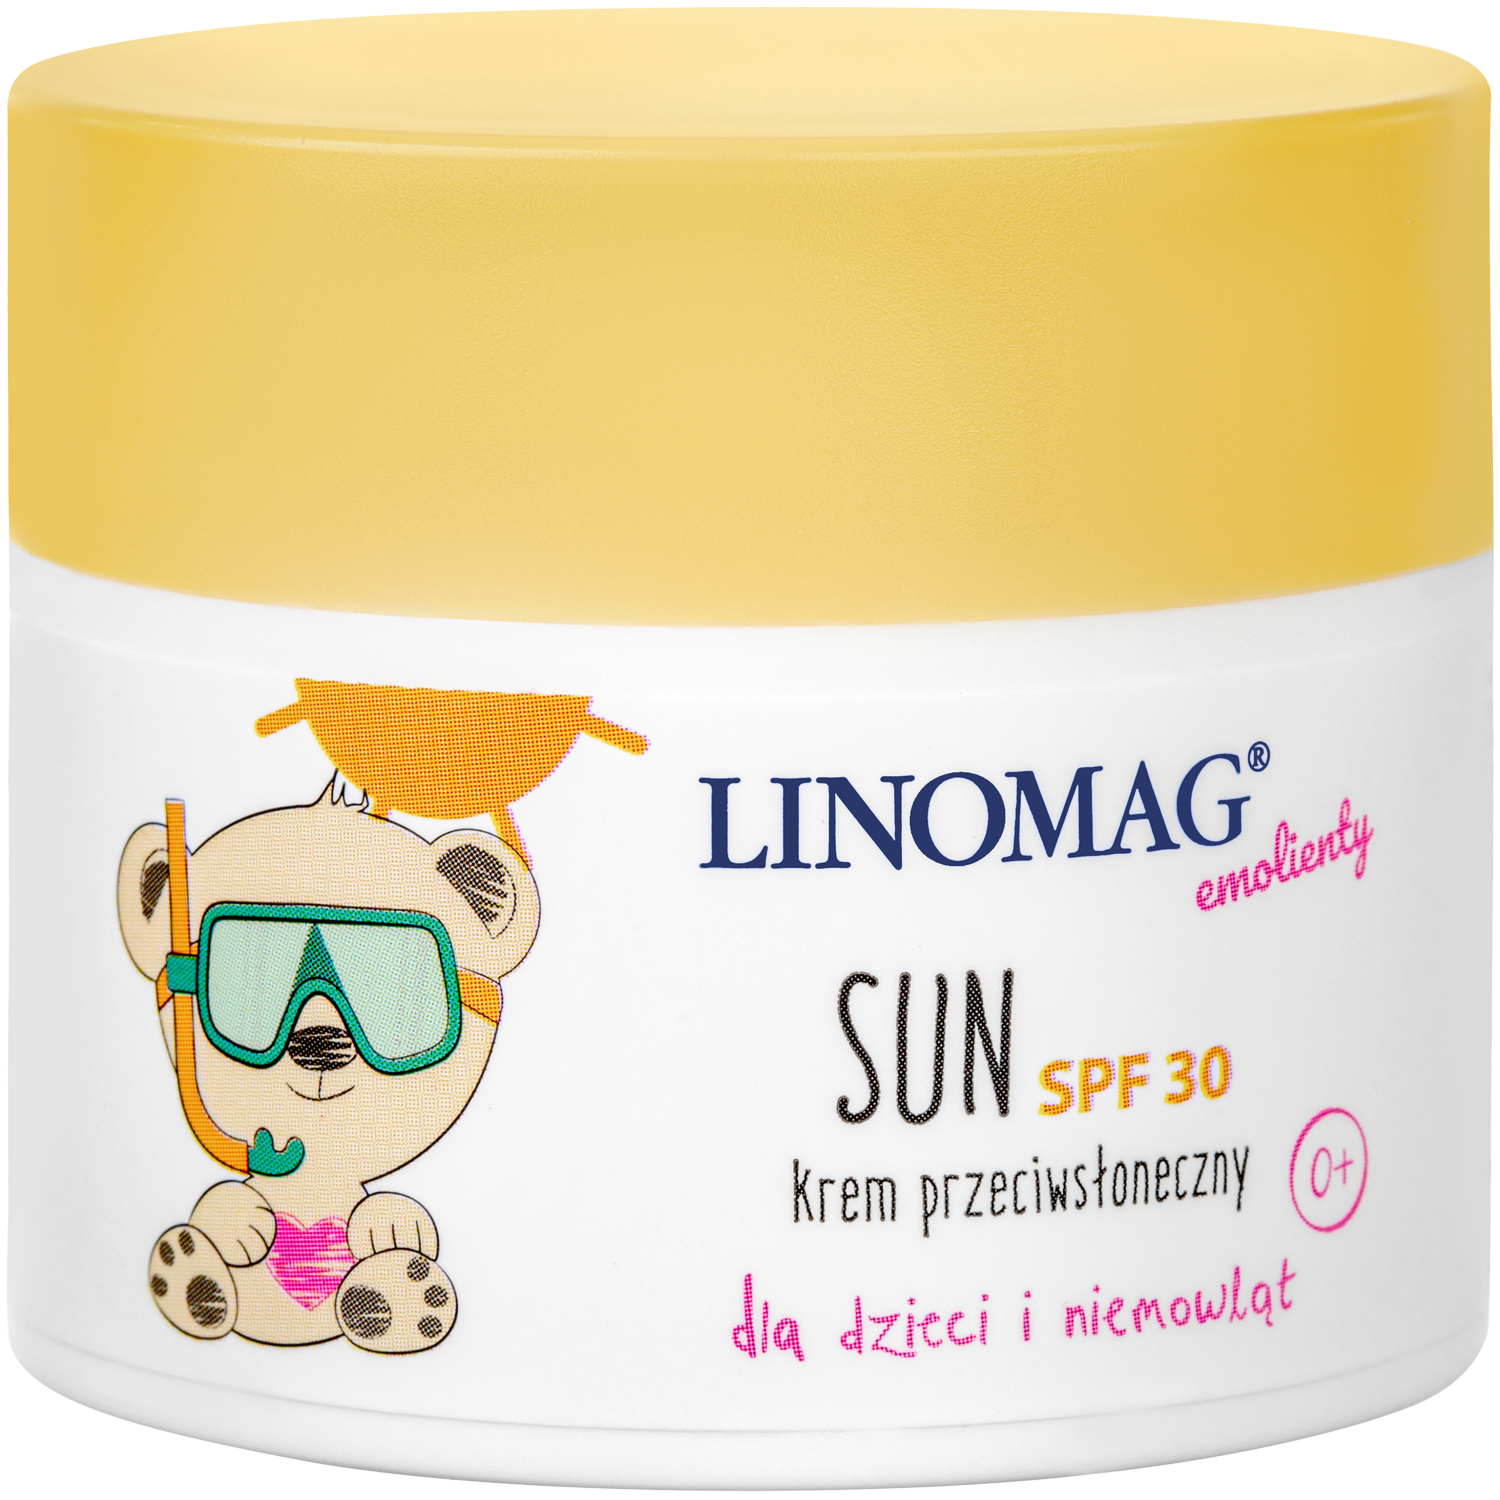 Linomag Emolienty Sun защитный крем SPF30 для детей, 50 мл